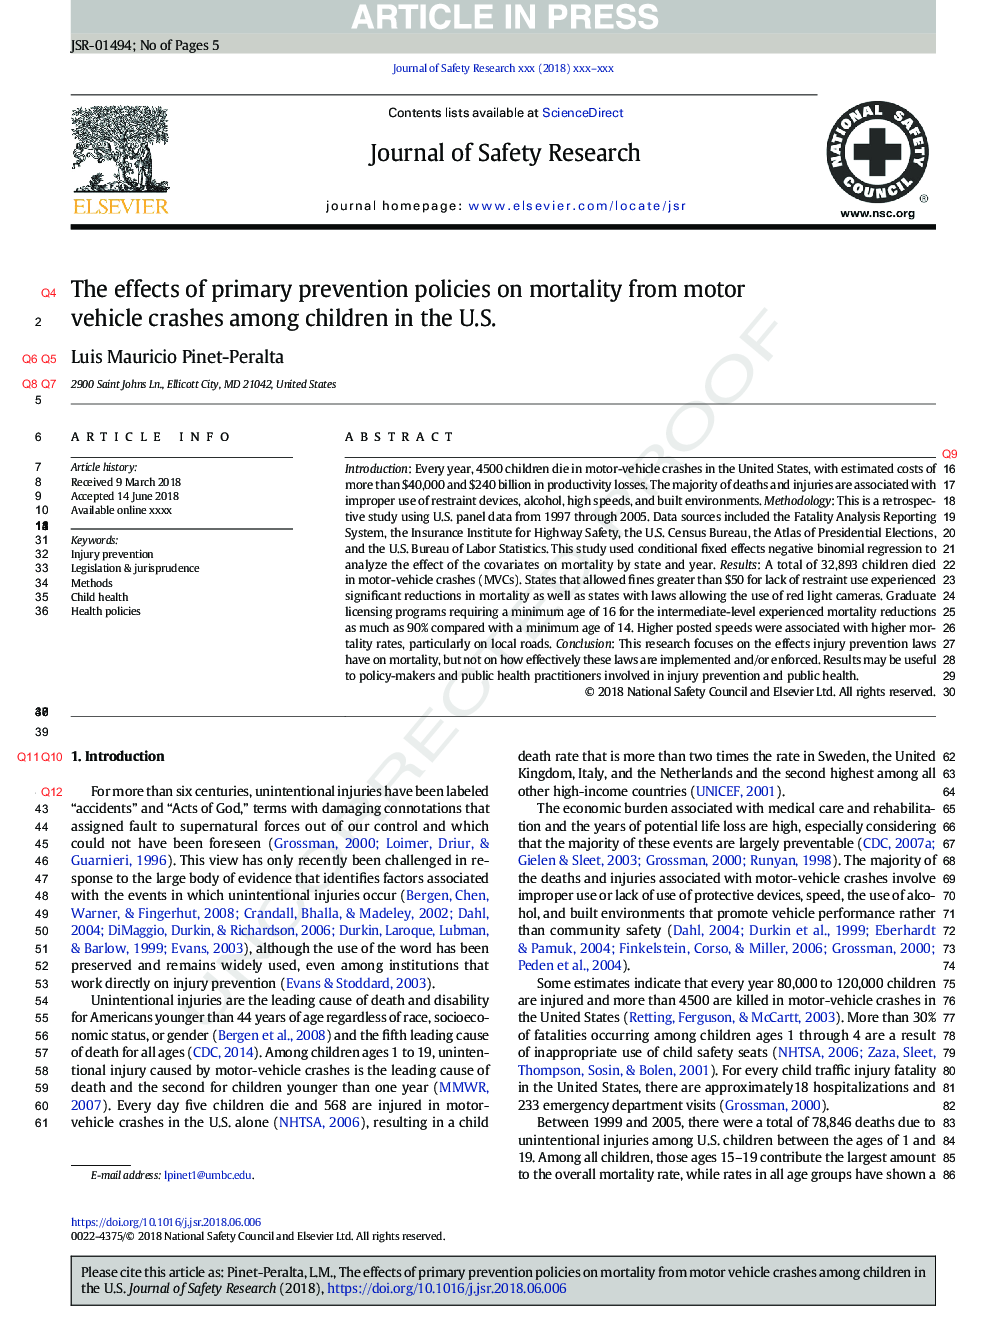 اثرات سیاست های پیشگیری اولیه در مورد مرگ و میر ناشی از سقوط وسایل نقلیه موتوری در میان کودکان در ایالات متحده 